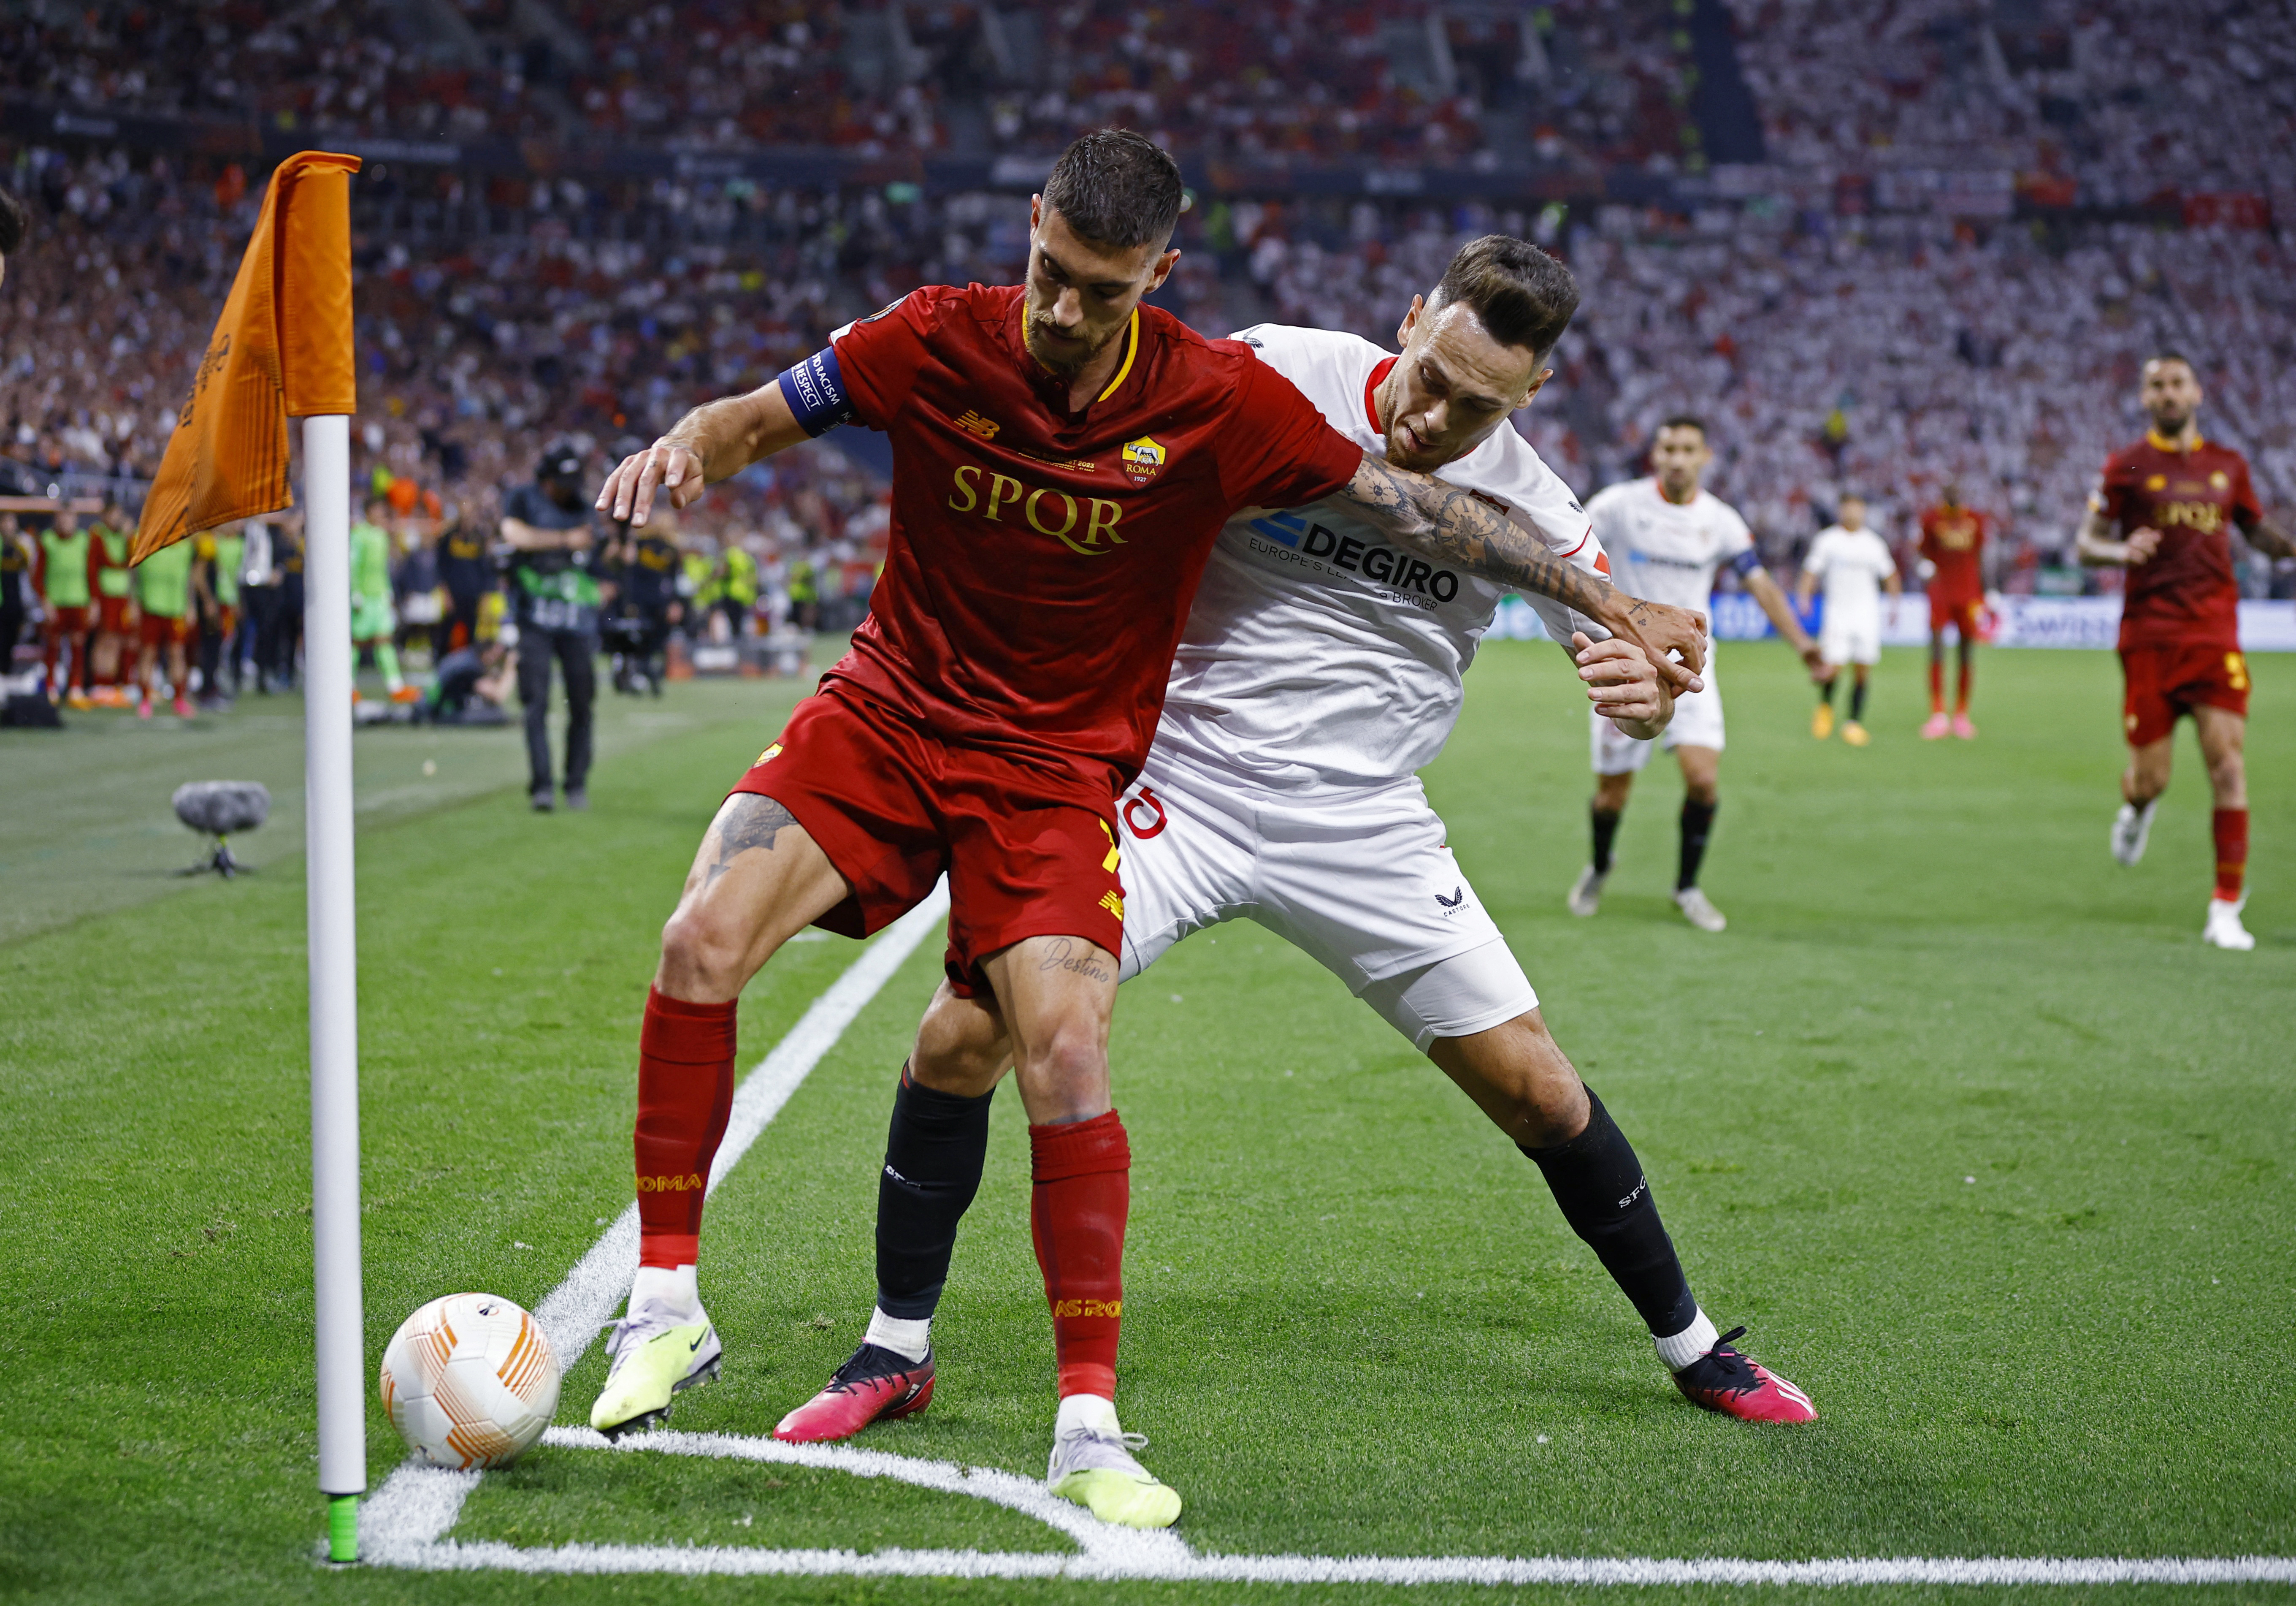 La Roma de Paulo Dybala y Mourinho iguala 1-1 con Sevilla en la final de la Europa League